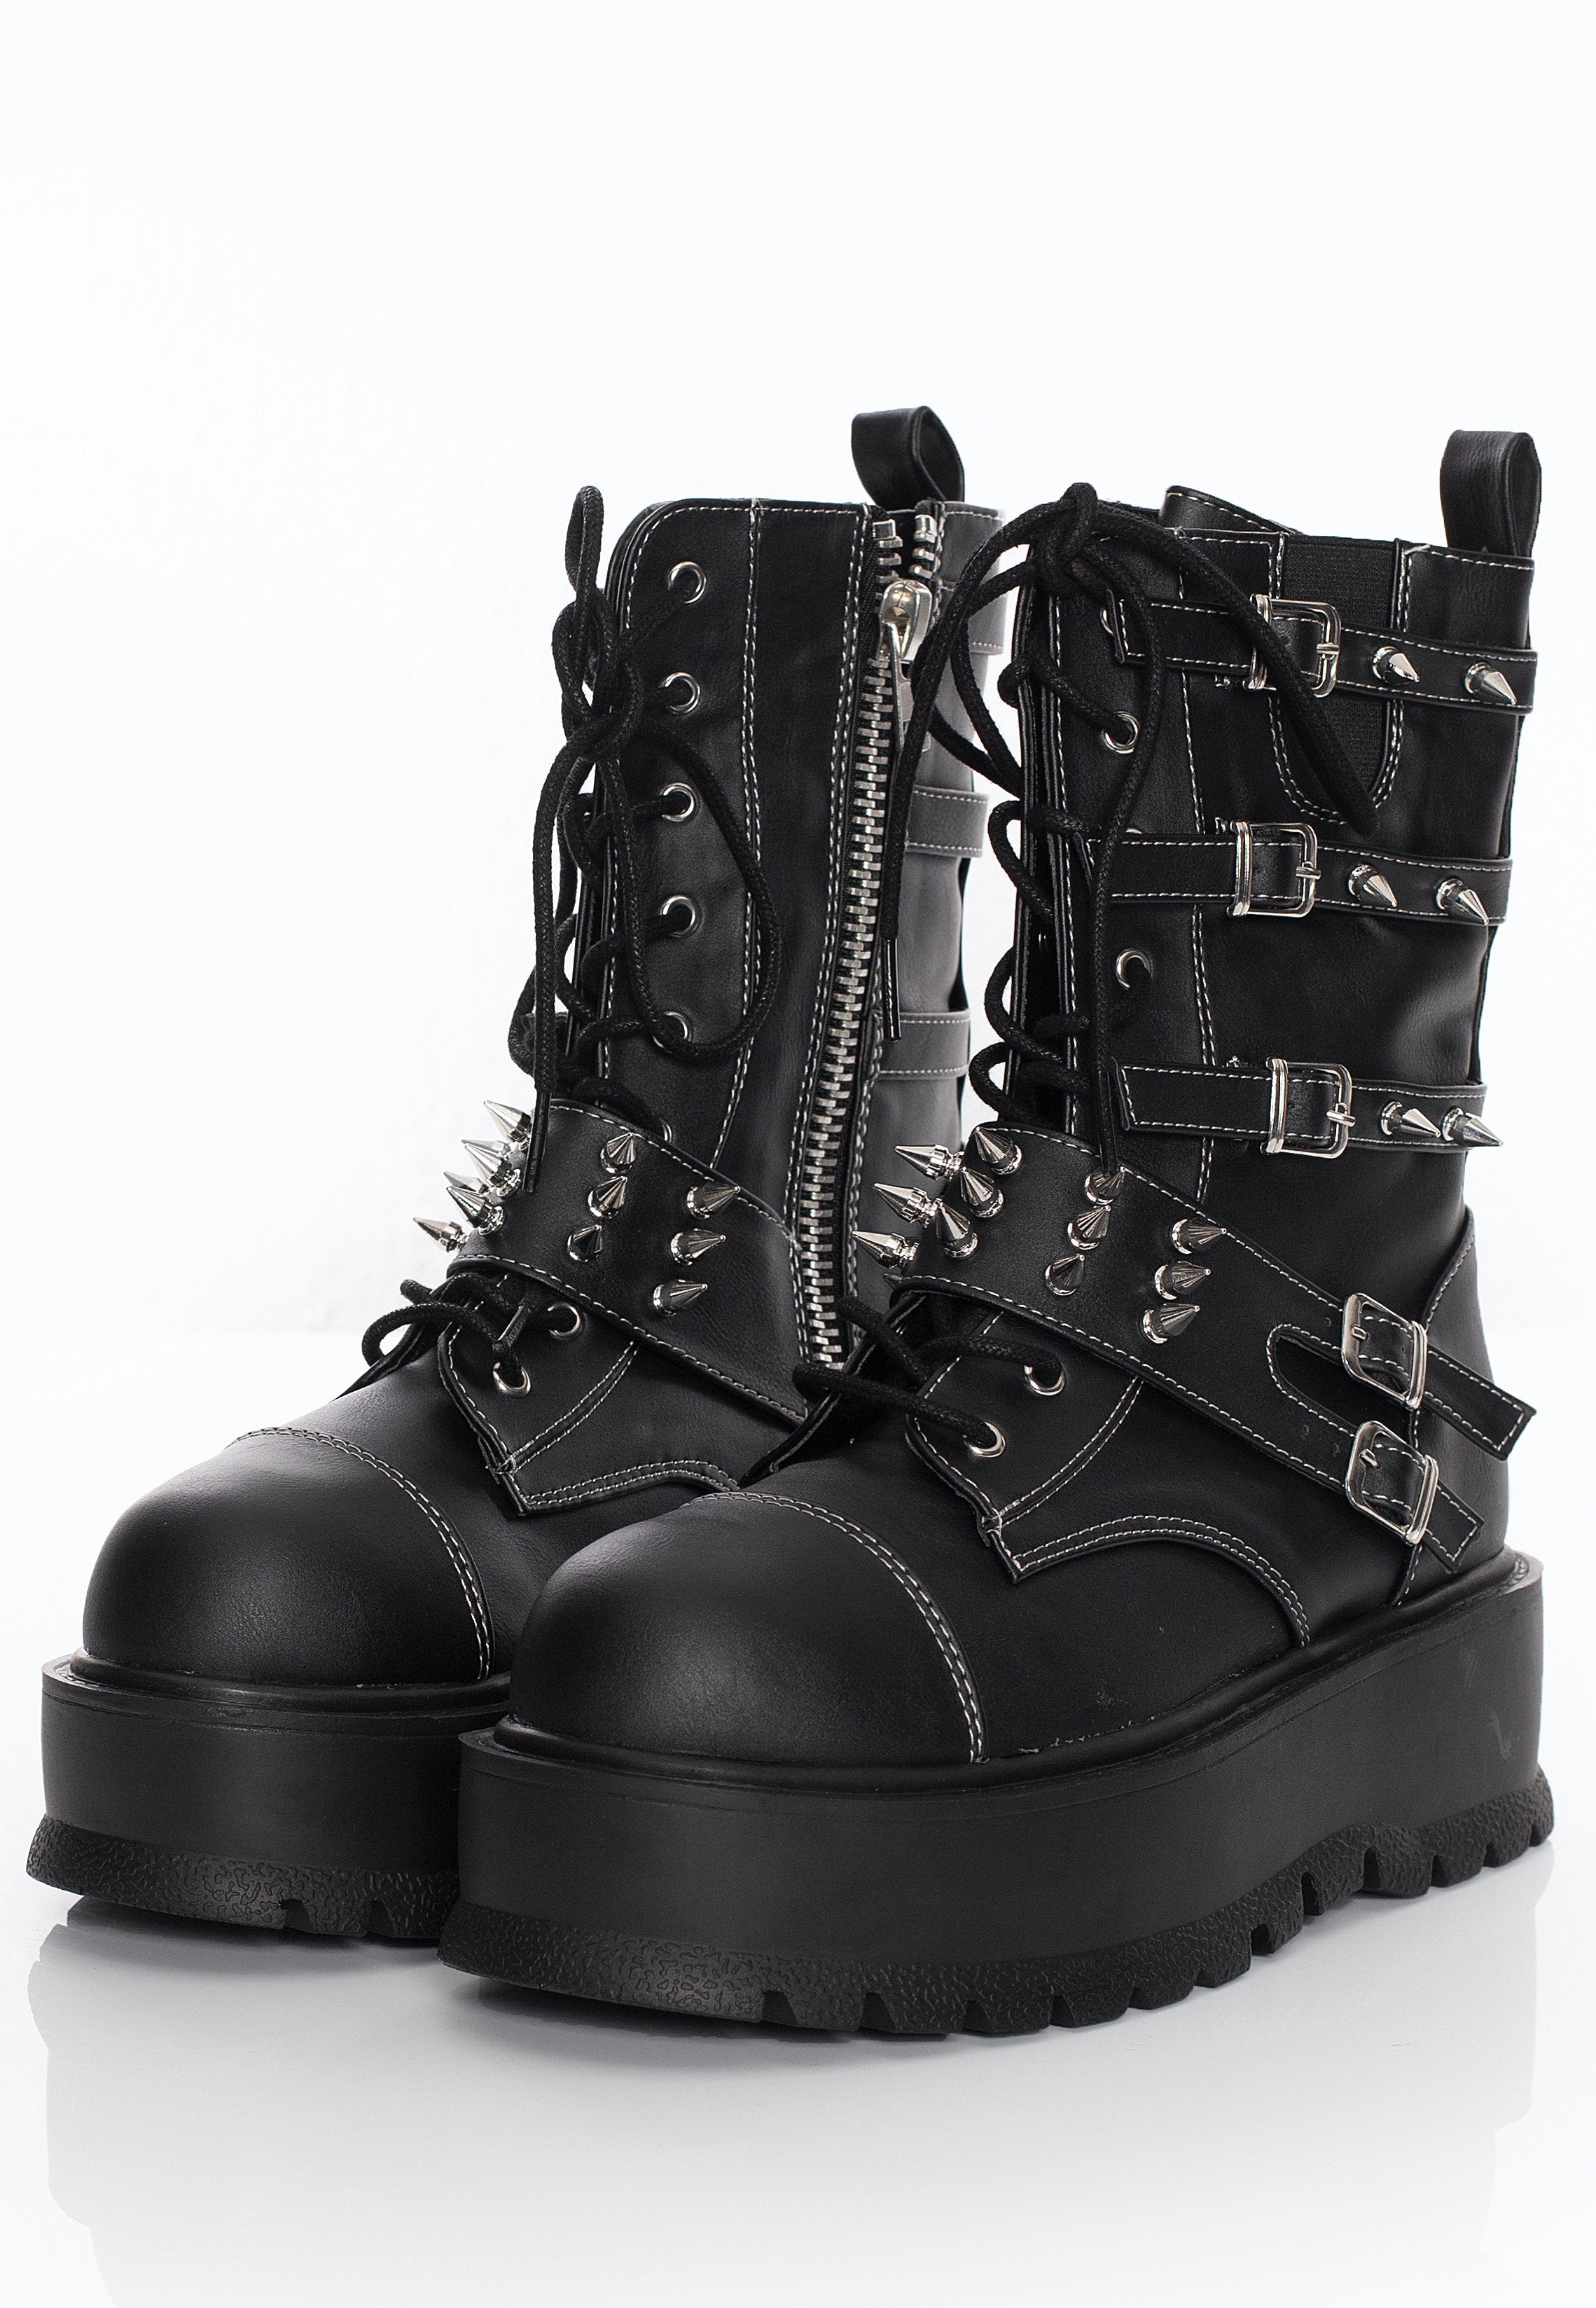 DemoniaCult - Slacker 165 Black Vegan Leather - Girl Shoes